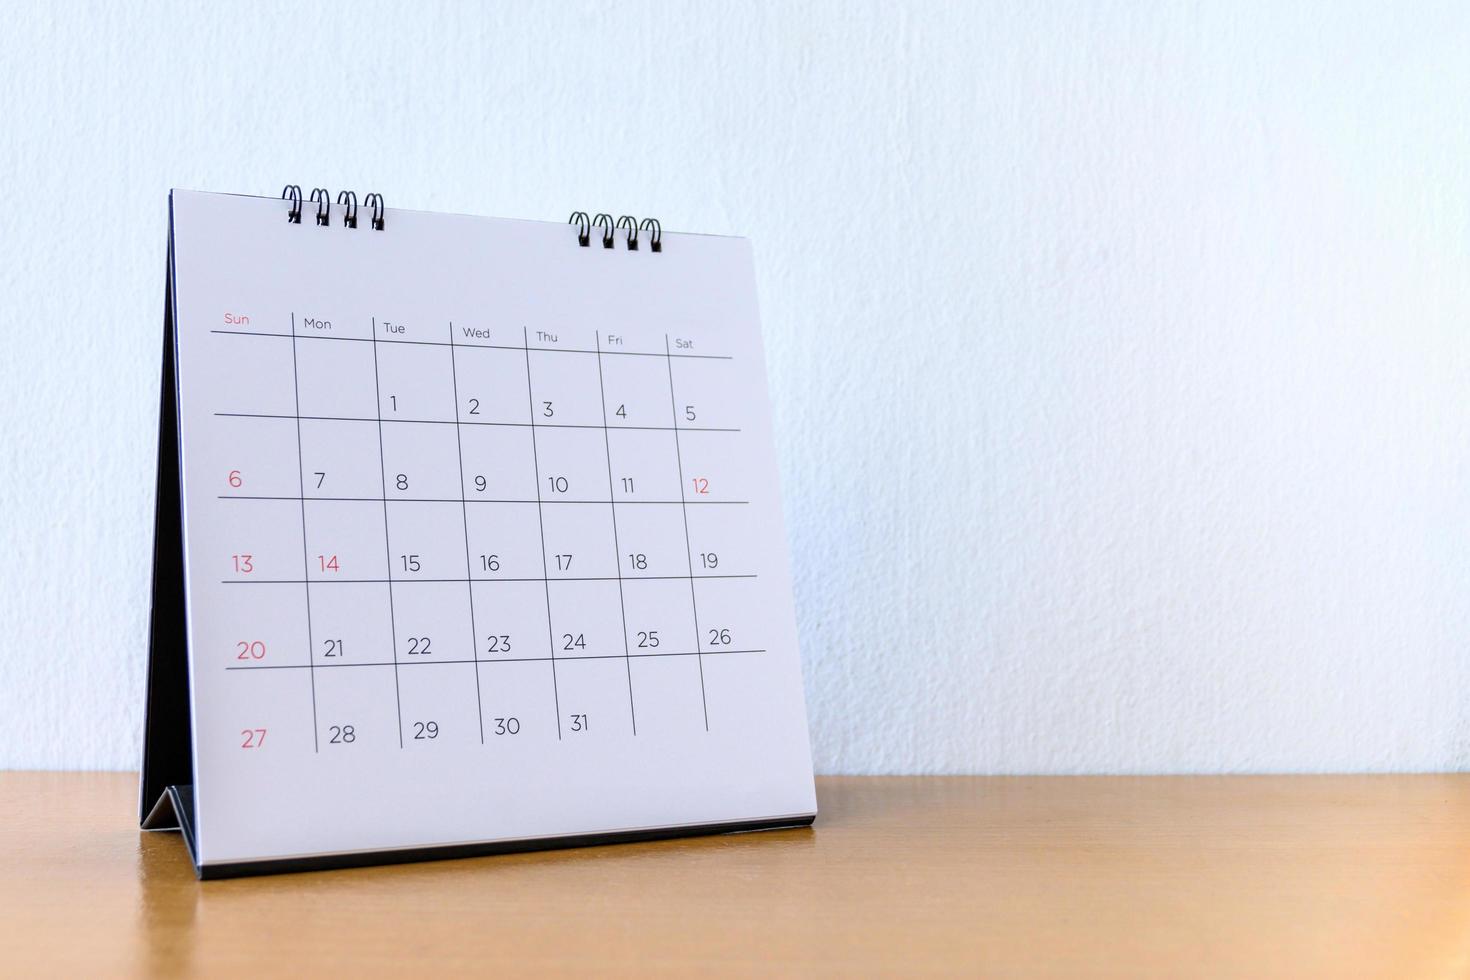 calendrier générique avec jours sur table en bois photo